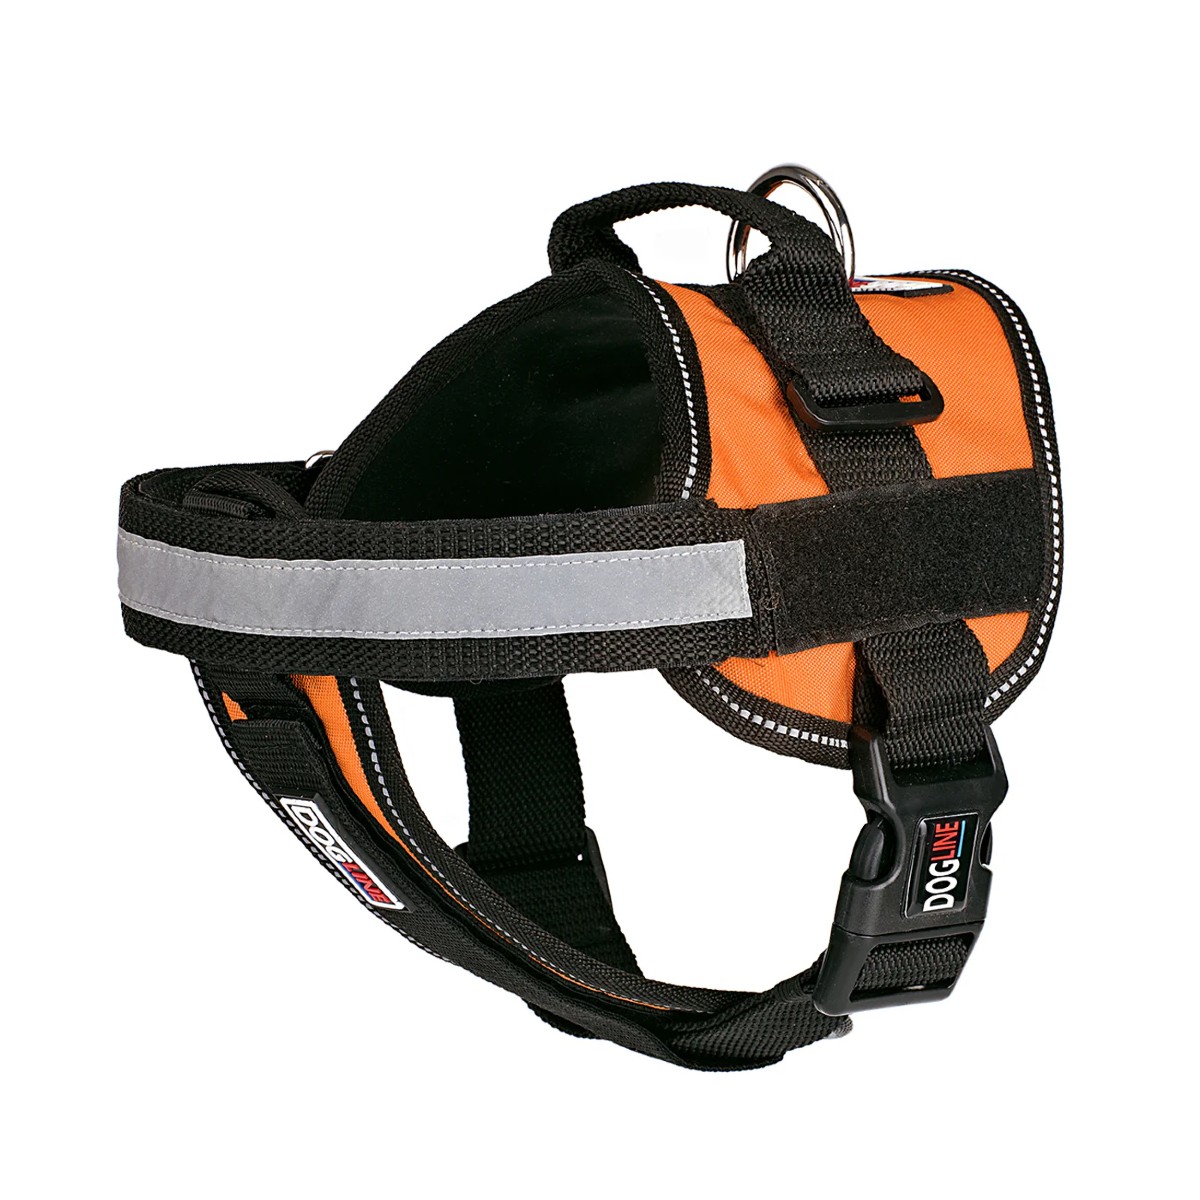 Dogline Unimax Multi Purpose Dog Harness - Orange